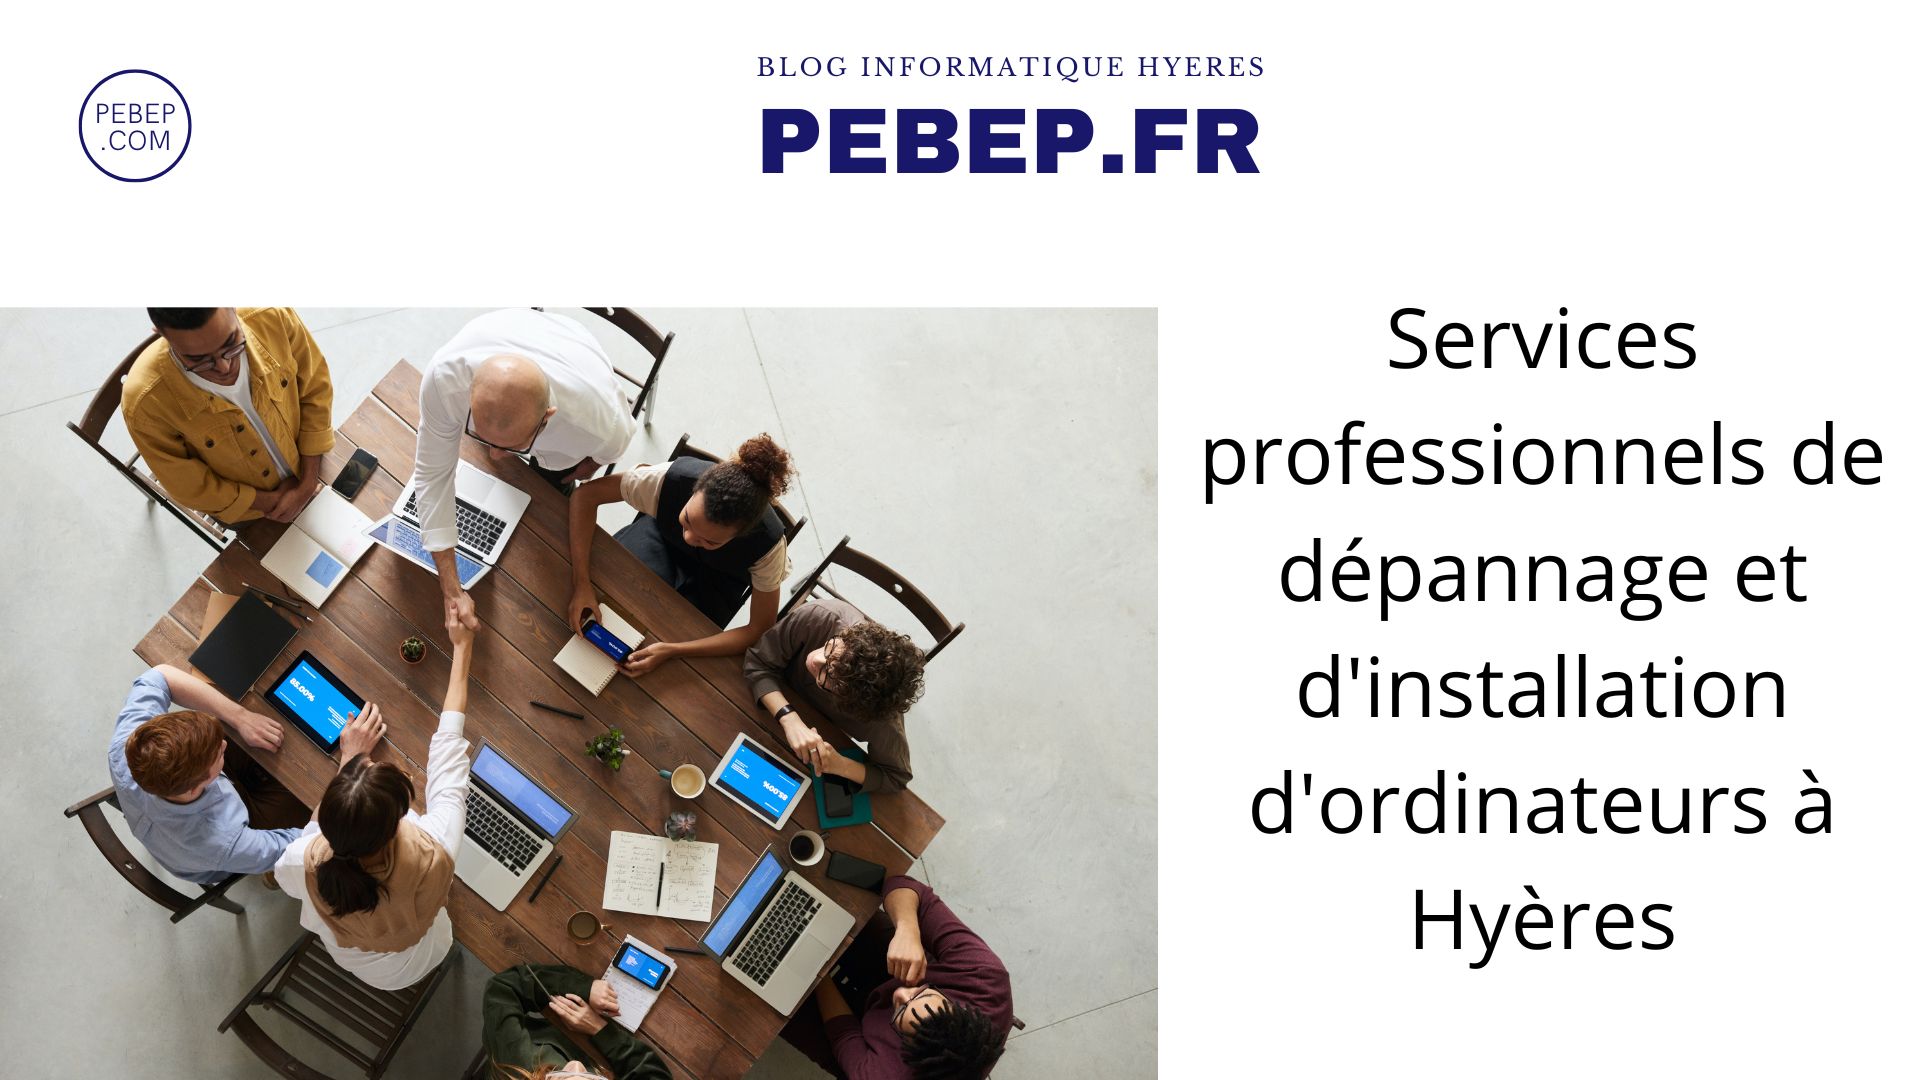 Services professionnels de dépannage et d'installation d'ordinateurs à Hyères.jpg, mai 2023